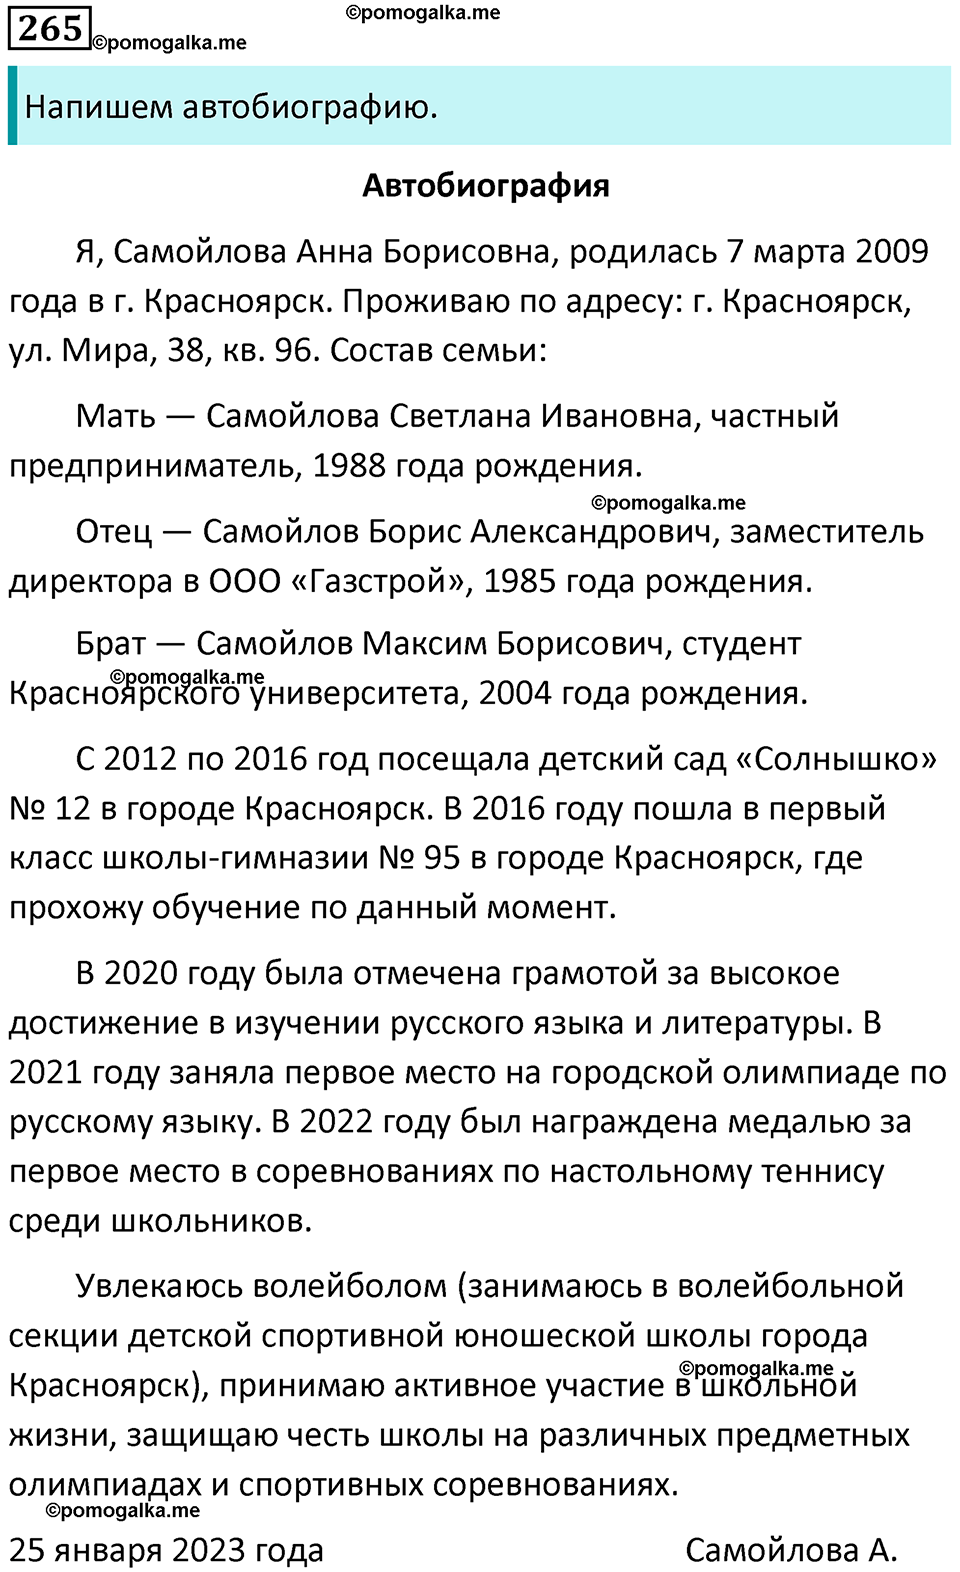 разбор упражнения №265 русский язык 8 класс Бархударов 2023 год